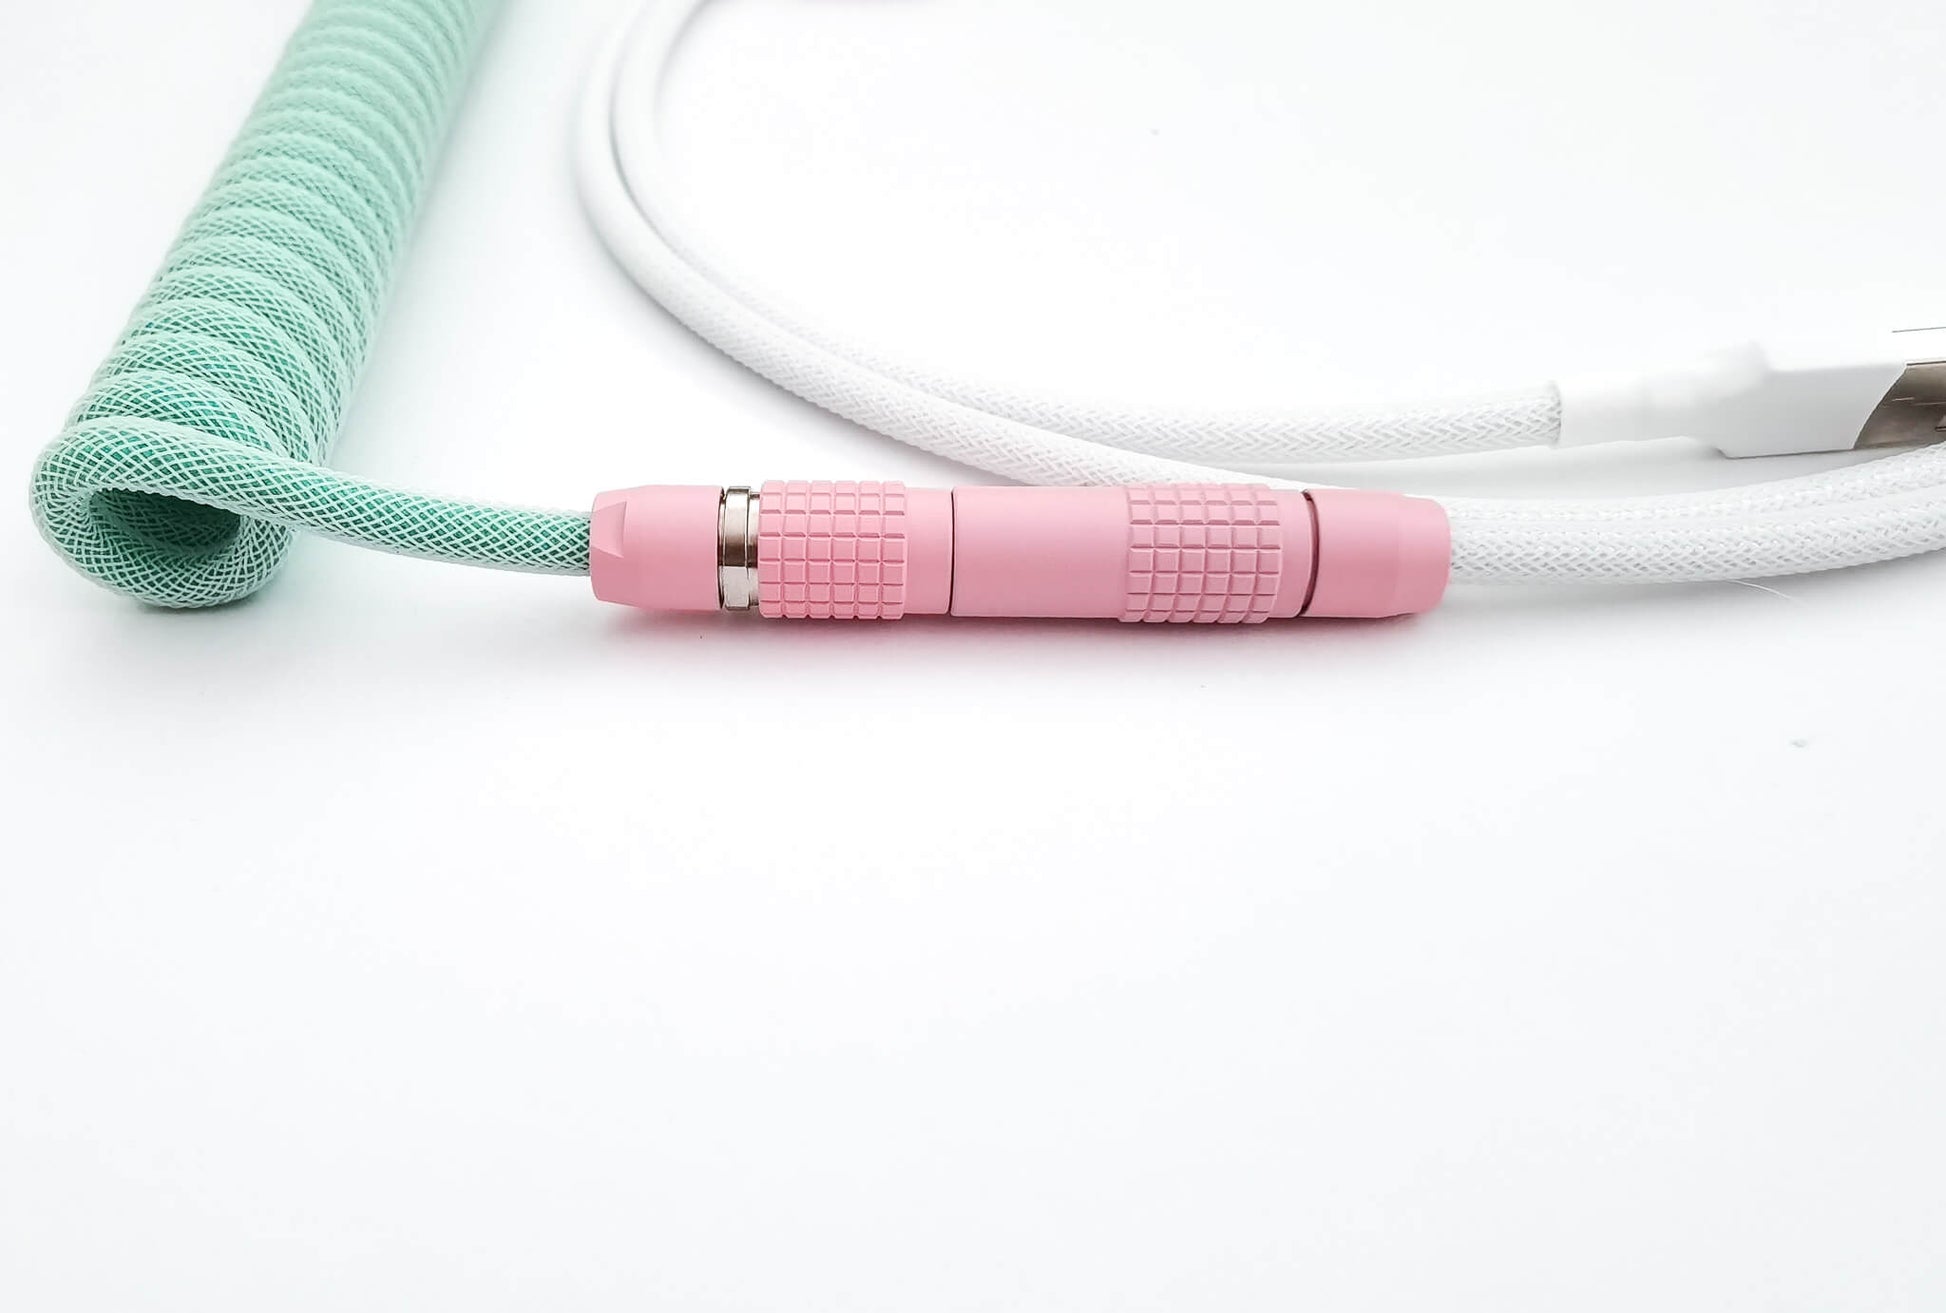 Pink Lemo USB cable